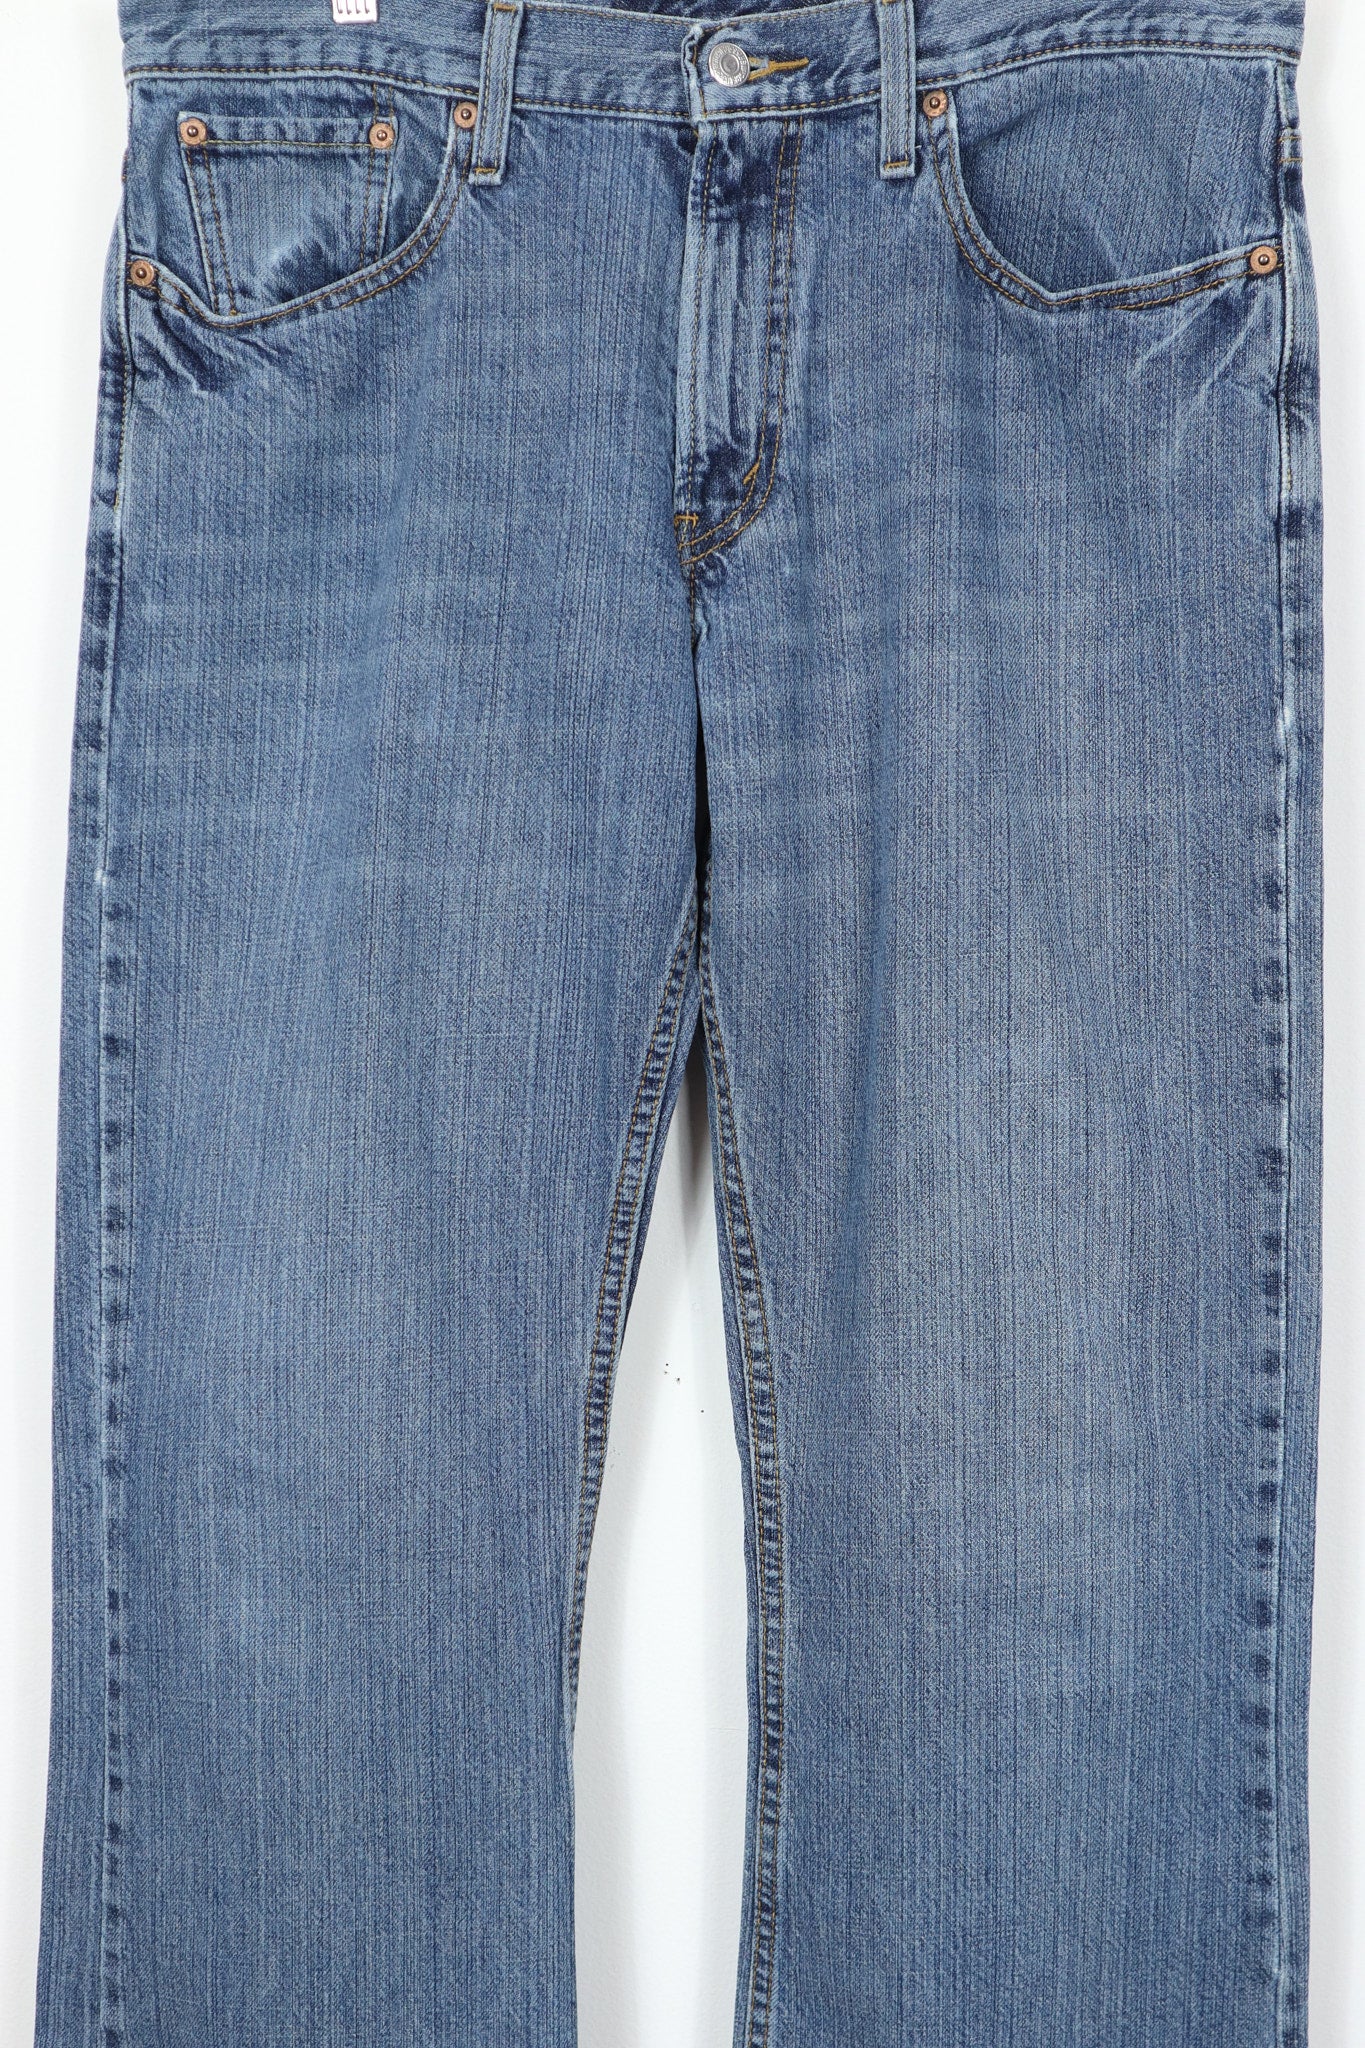 Vintage Levi's 527 Boot Cut Jeans